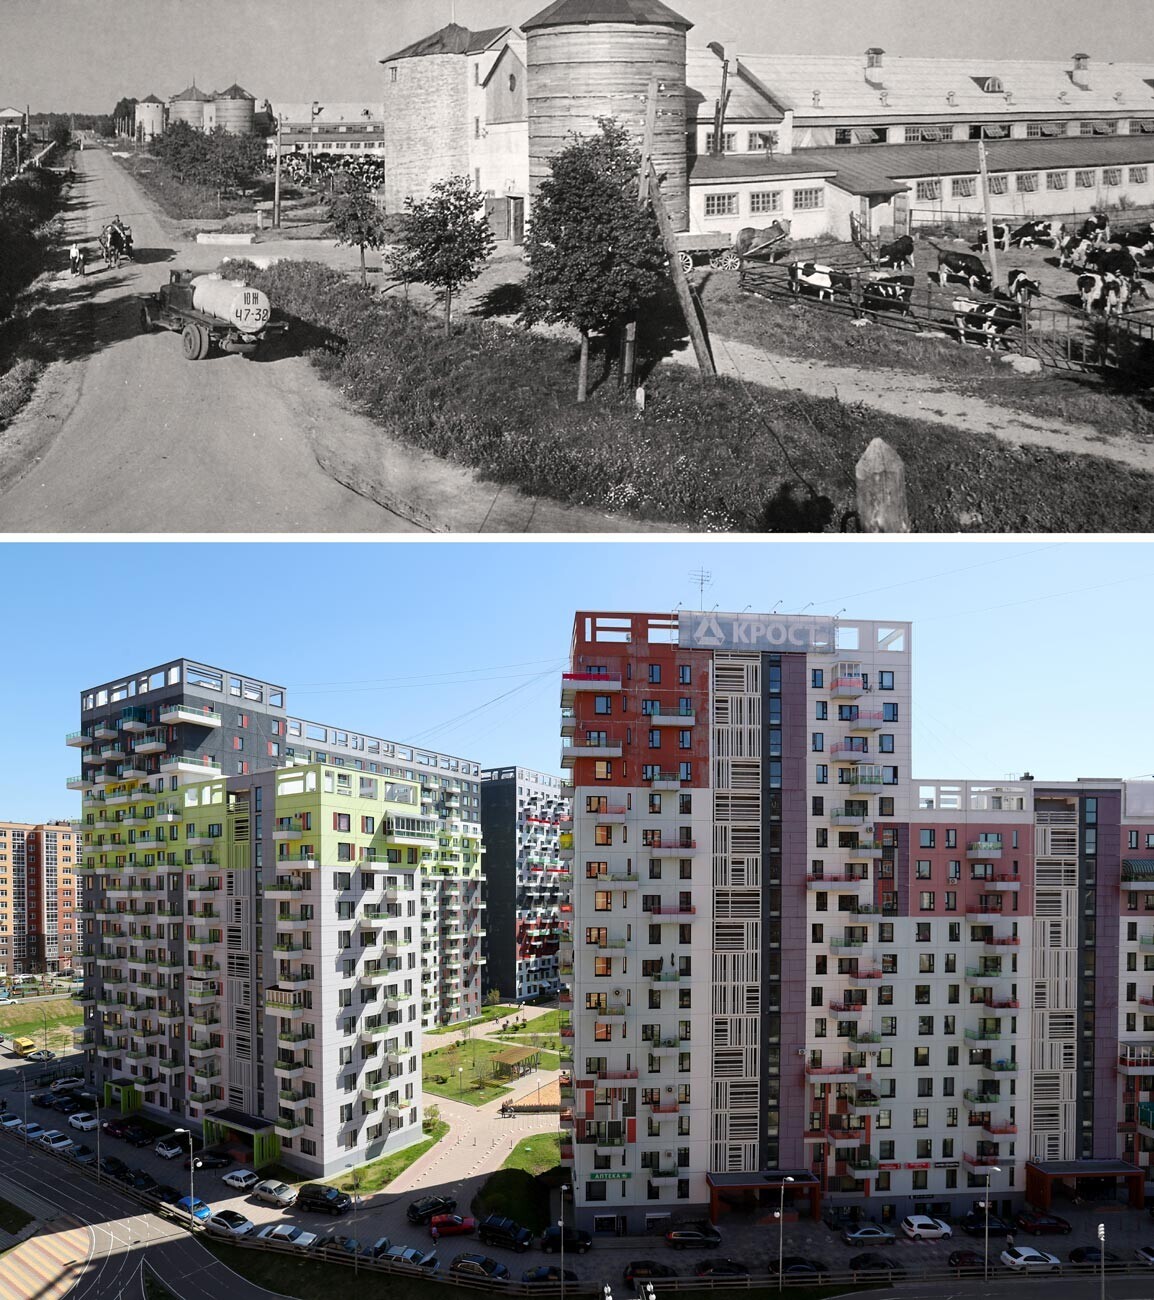 Levo: Mlekarna sovhoza Kommunarka, 1968. Desno: Novo stanovanjsko območje.
